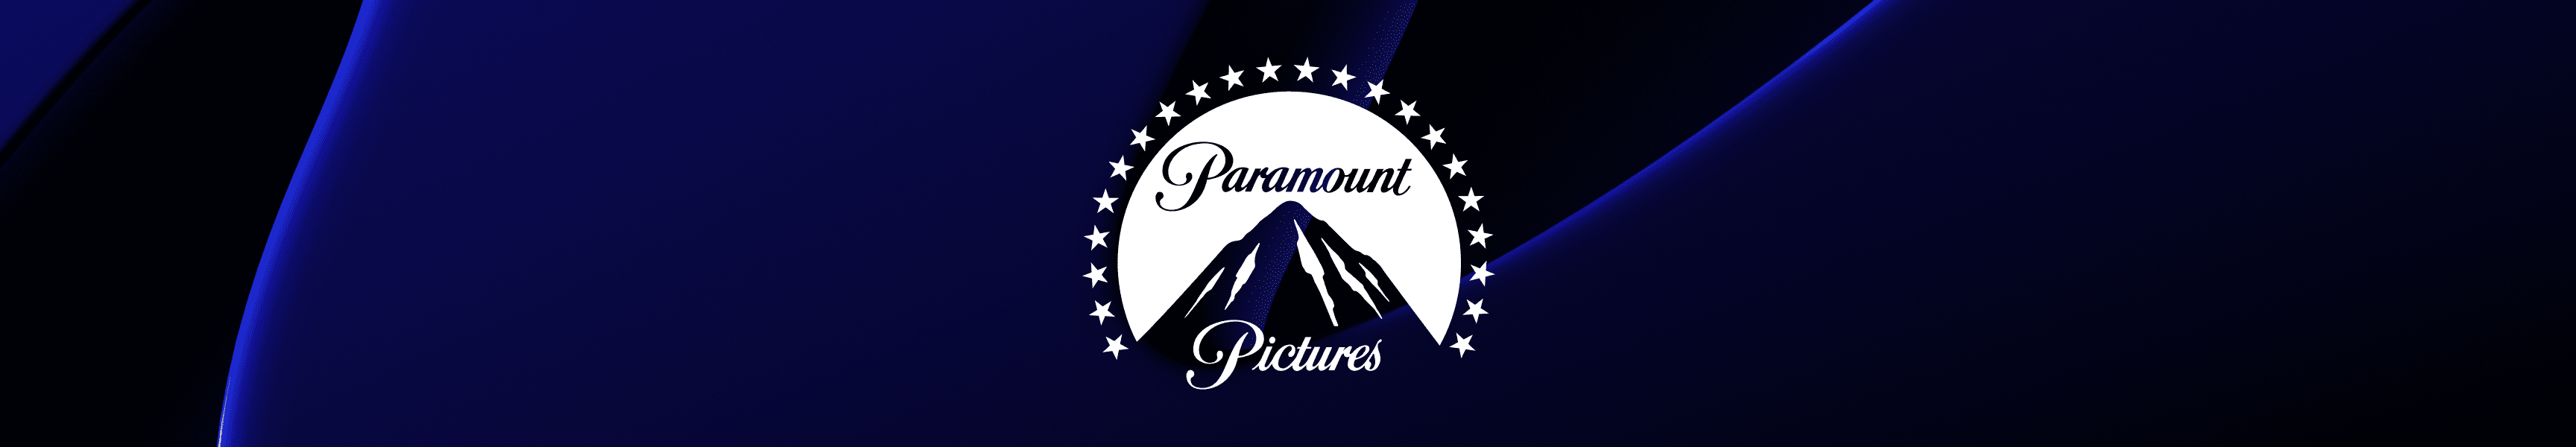 Paramount Pictures Débardeurs